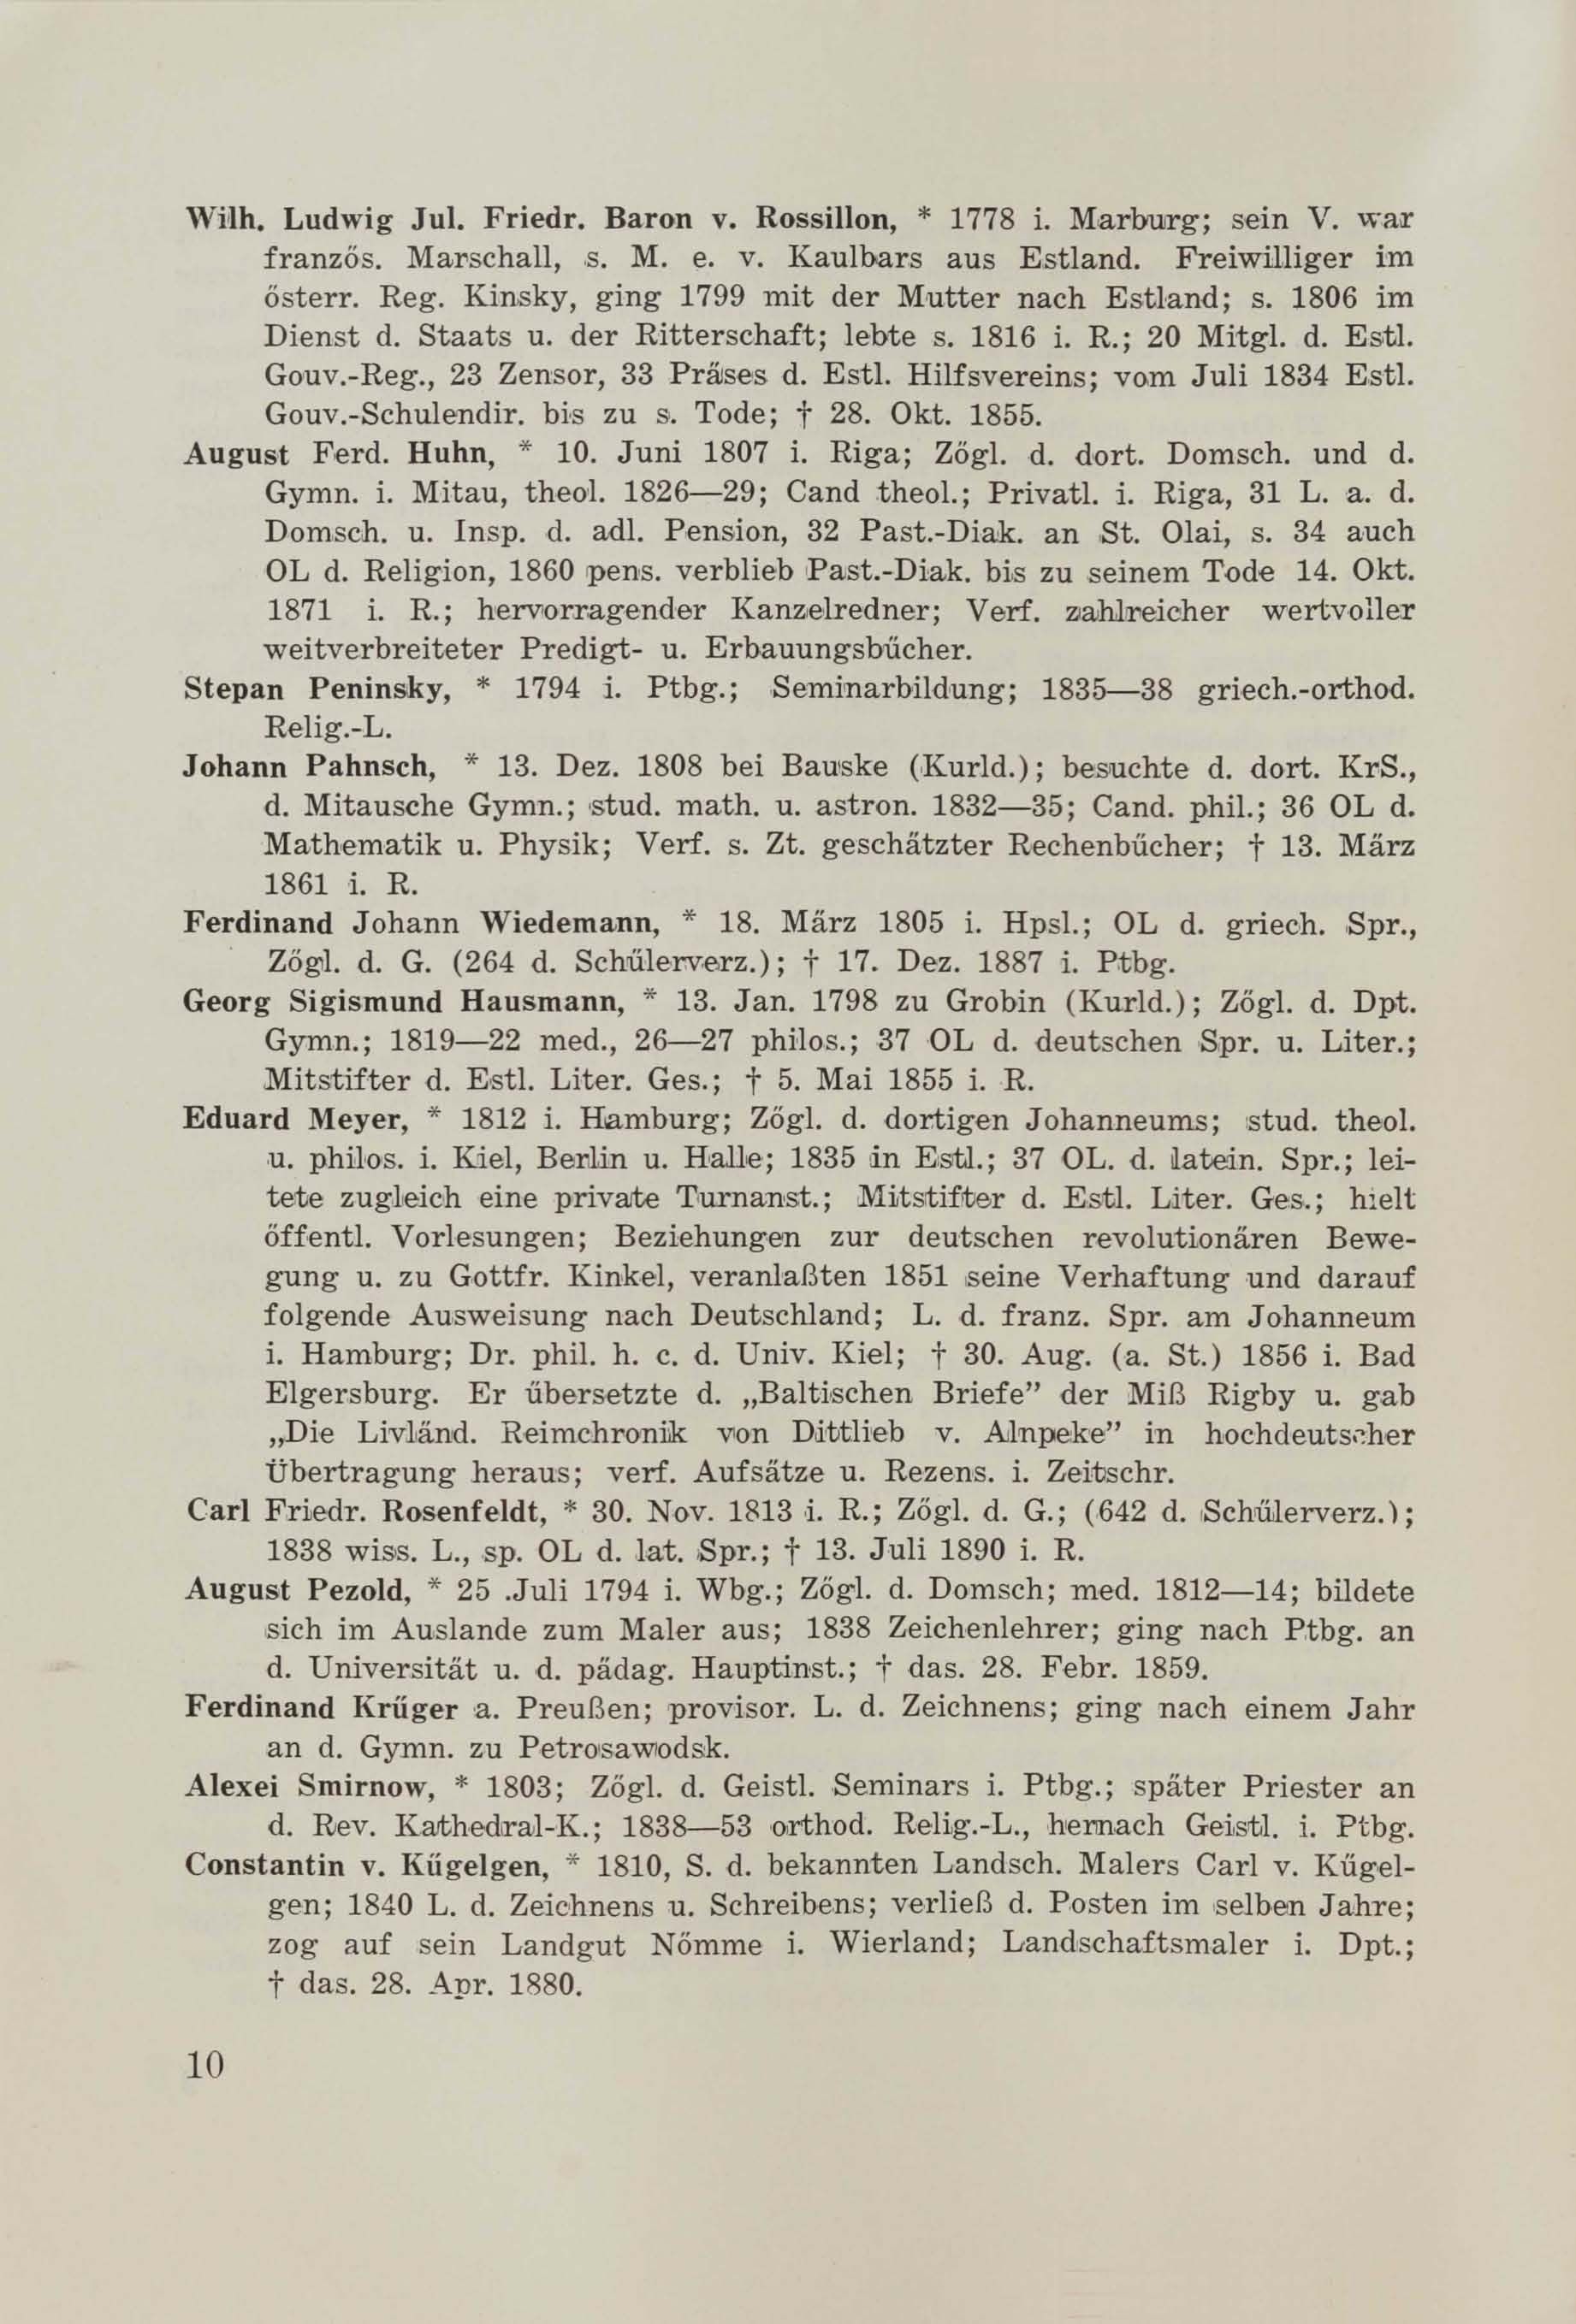 Schüler-Verzeichnis des Revalschen Gouvernements-Gymnasiums 1805–1890 (1931) | 21. (10) Main body of text